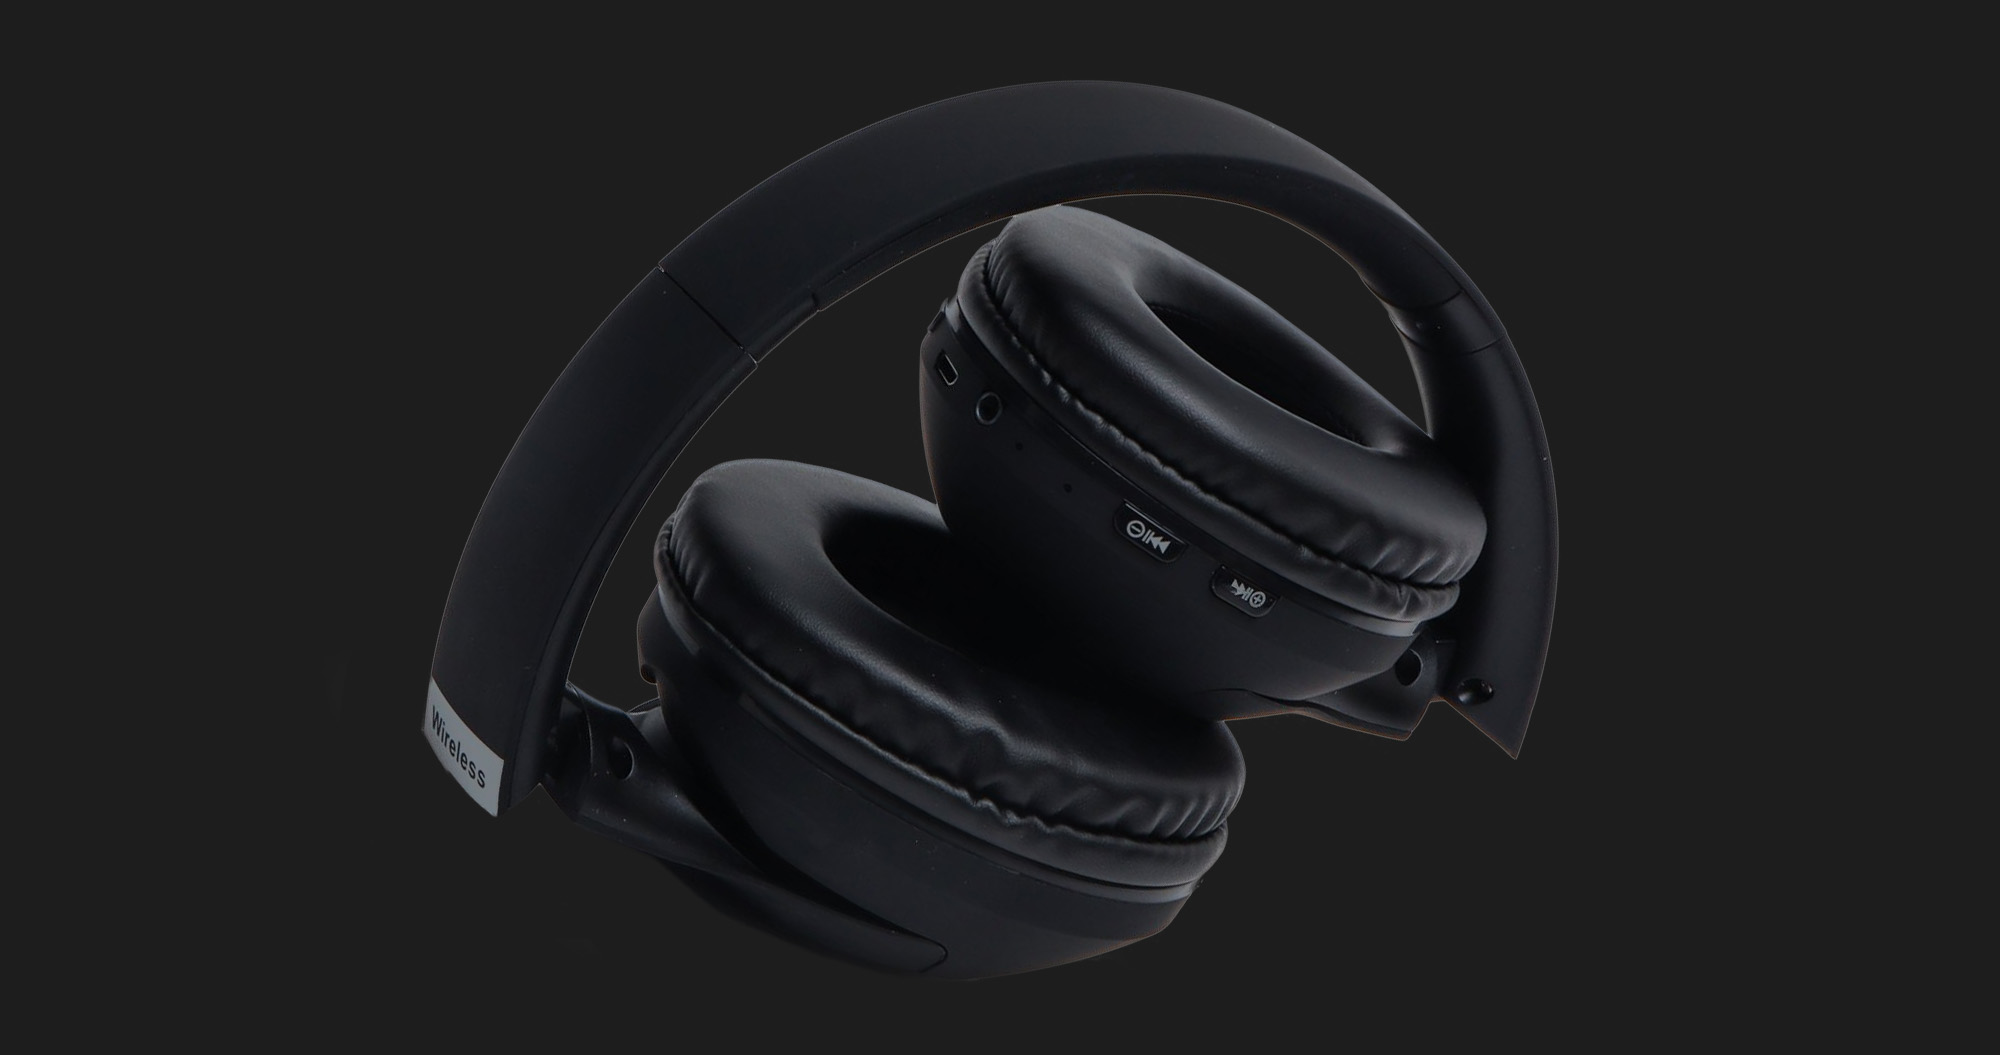 Наушники Bose QuietComfort Headphones (Cyprees Green)